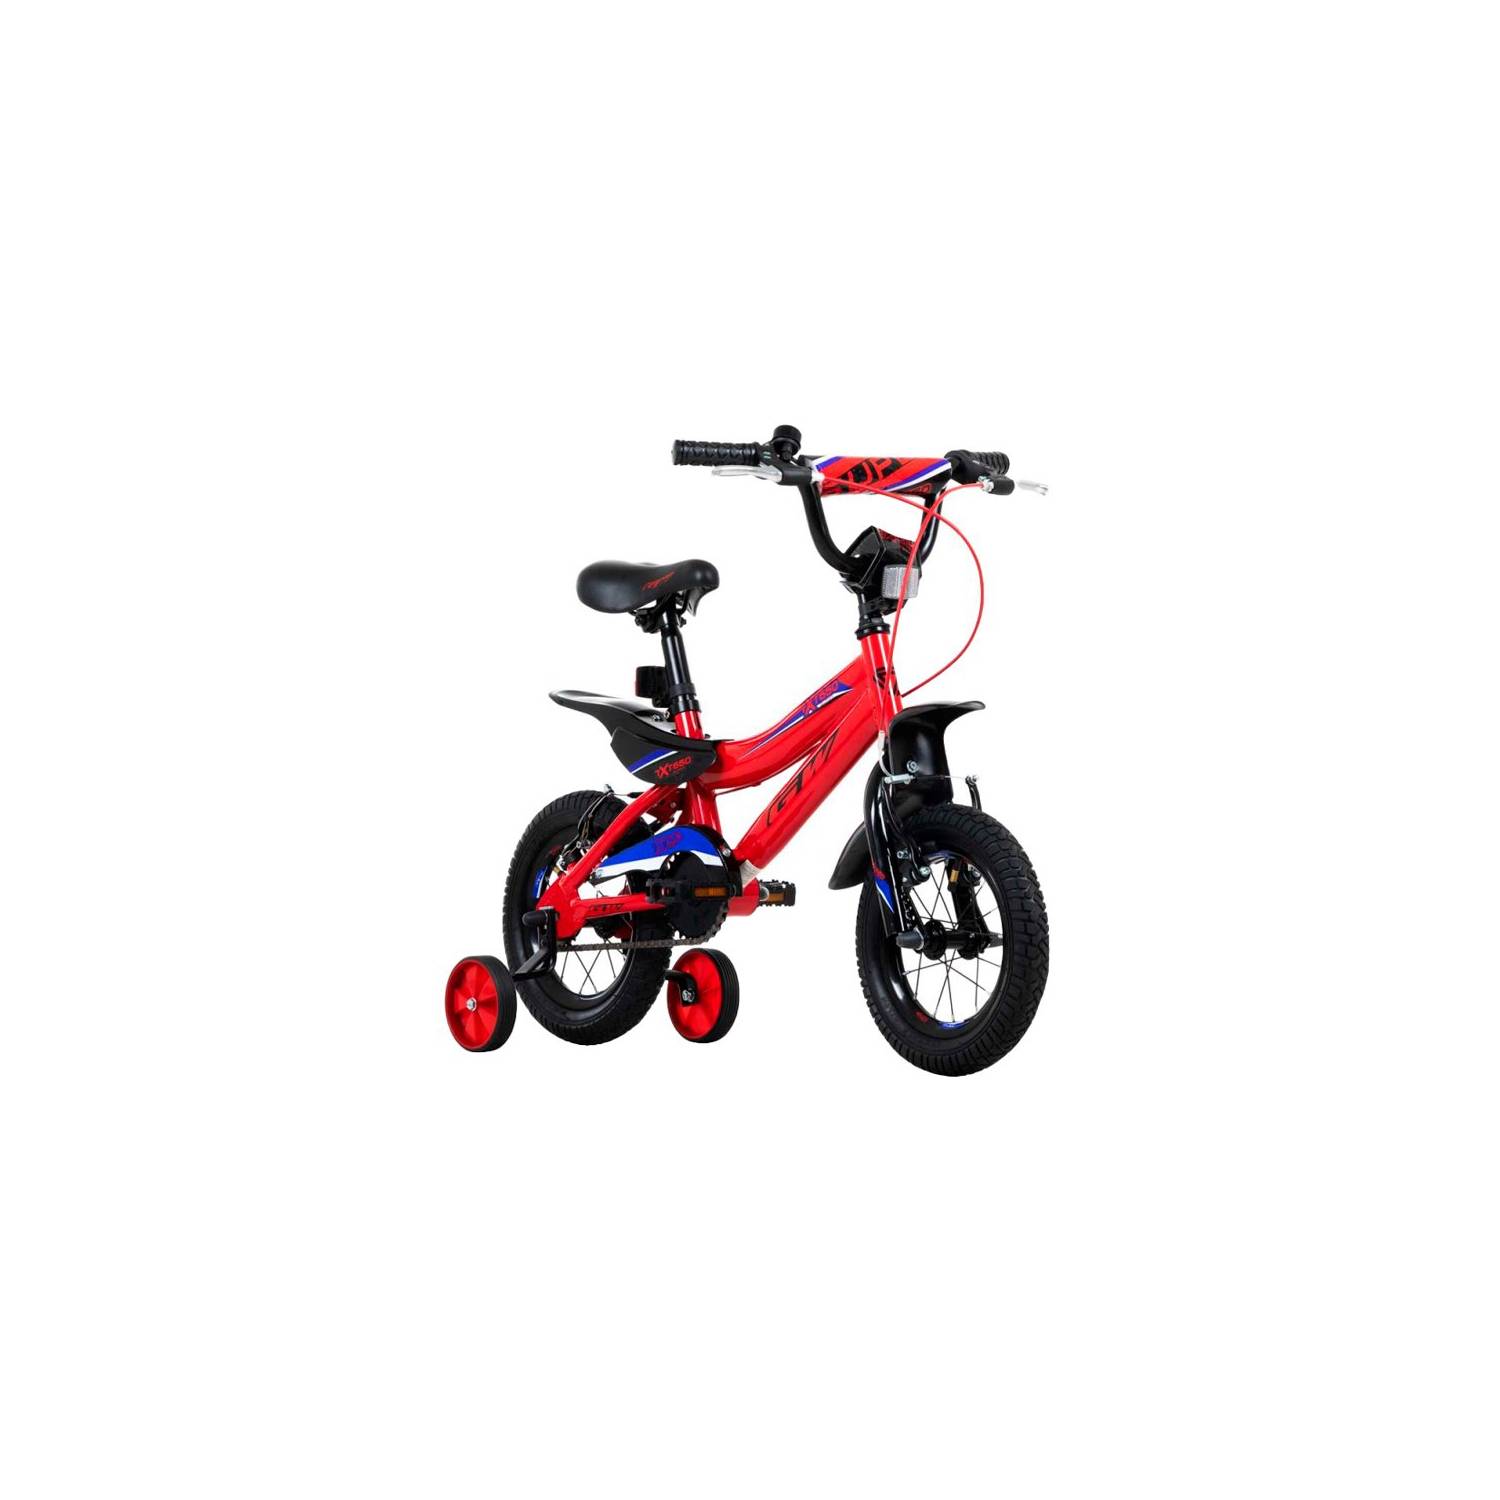 Bicicleta rin 12 gw extreme para niños de 2 a 4 años rojo GW